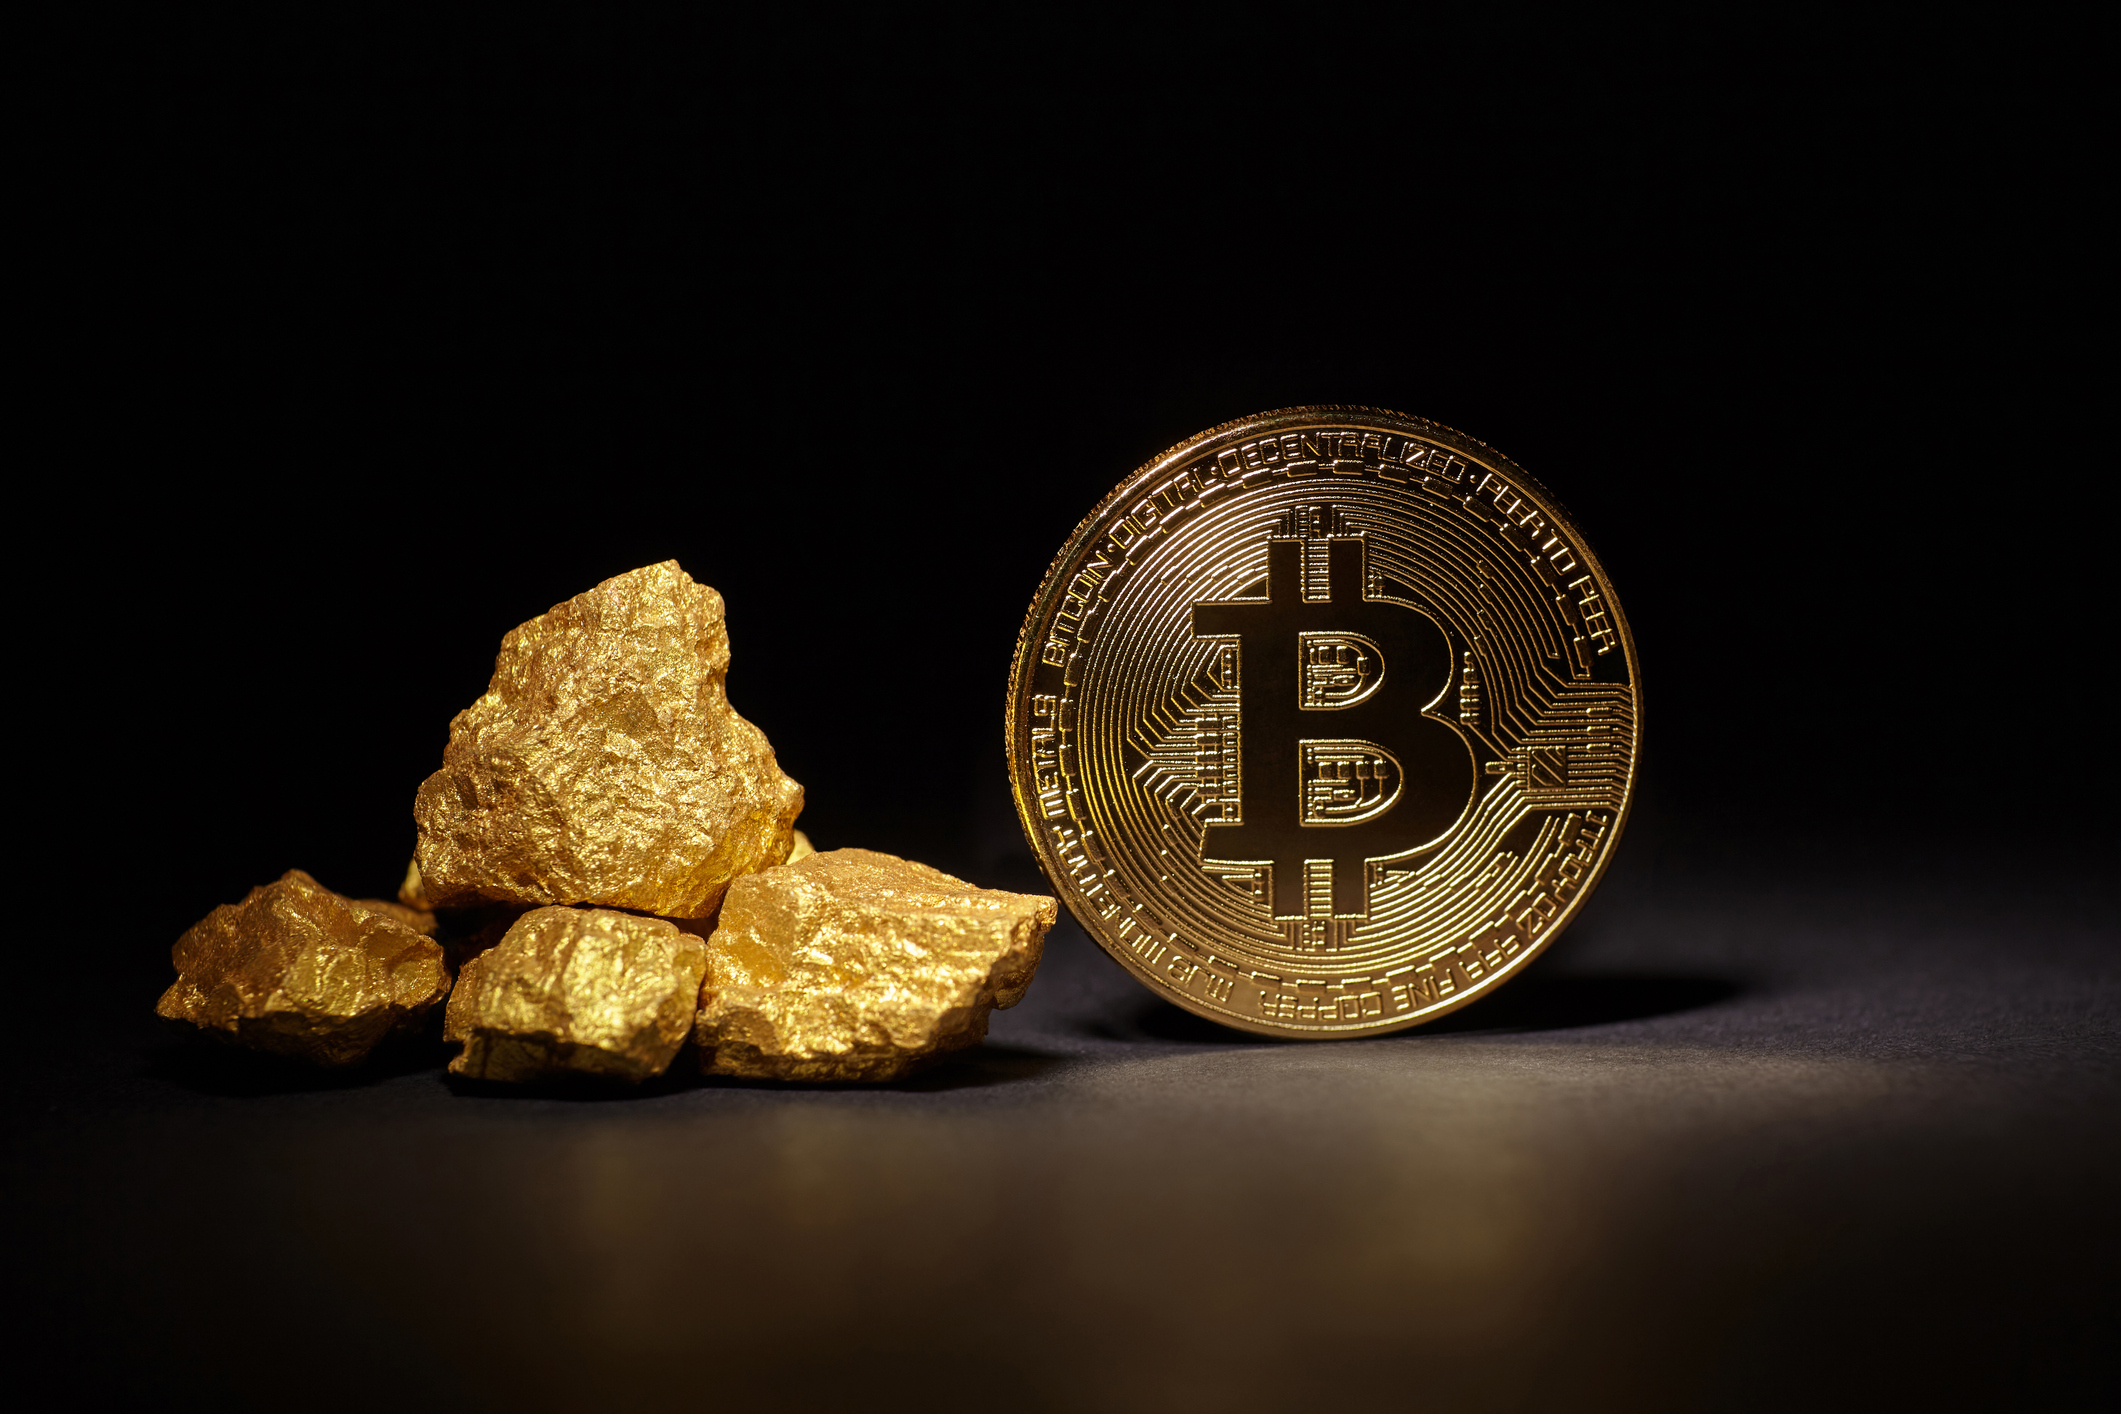 Bitcoin gold manipulation